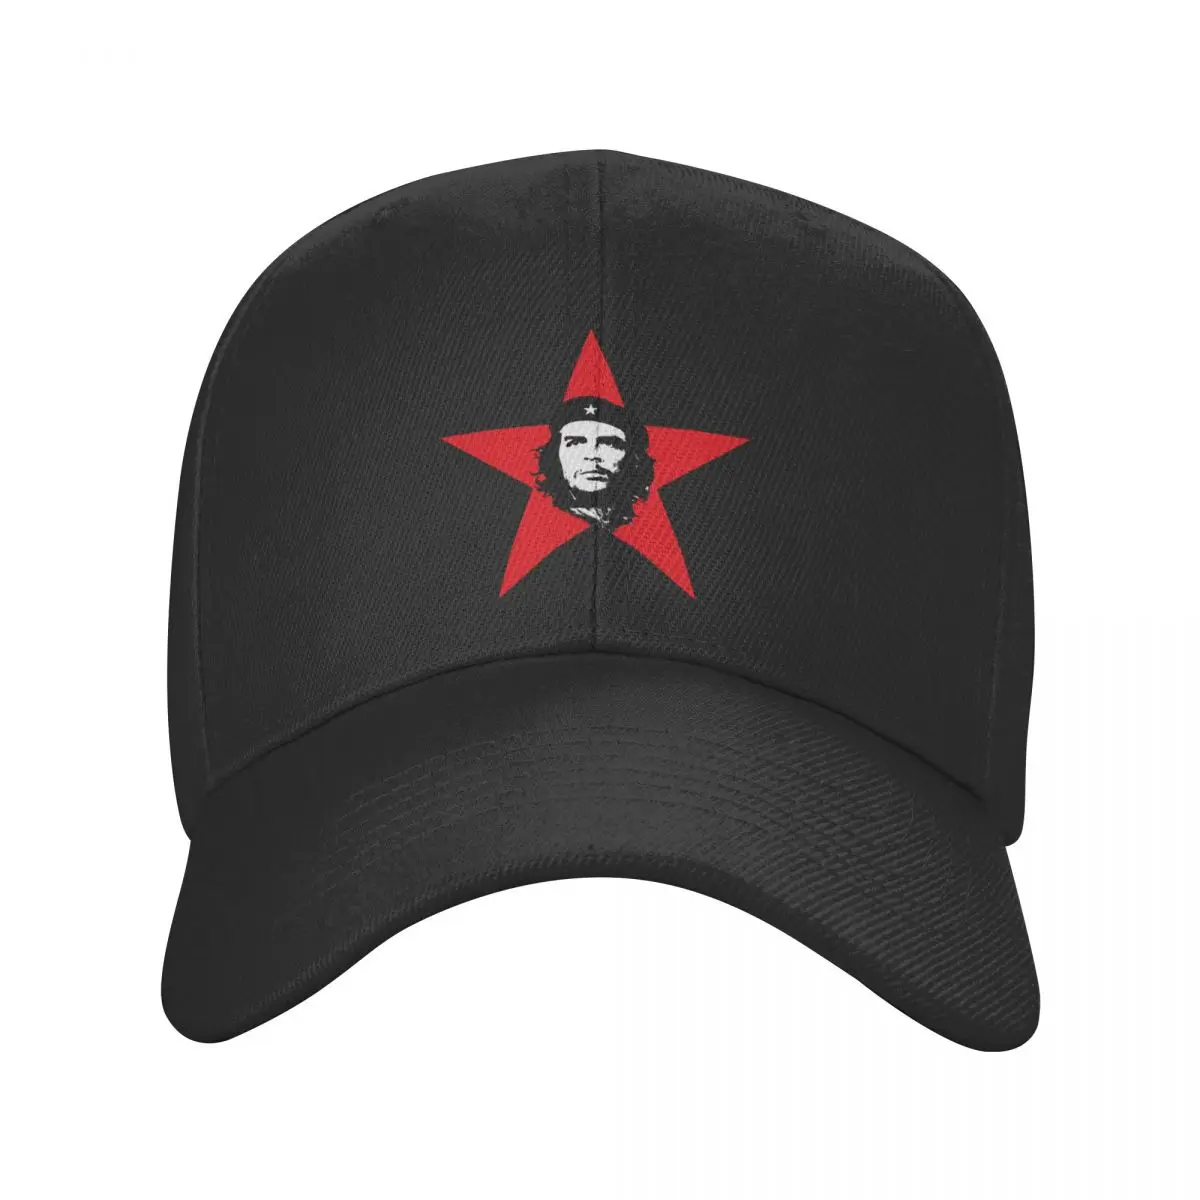 

New Punk Che Guevara Cuba Cuban Revolution Baseball Cap Men Women Adjustable Freedom Dad Hat Outdoor Snapback Caps